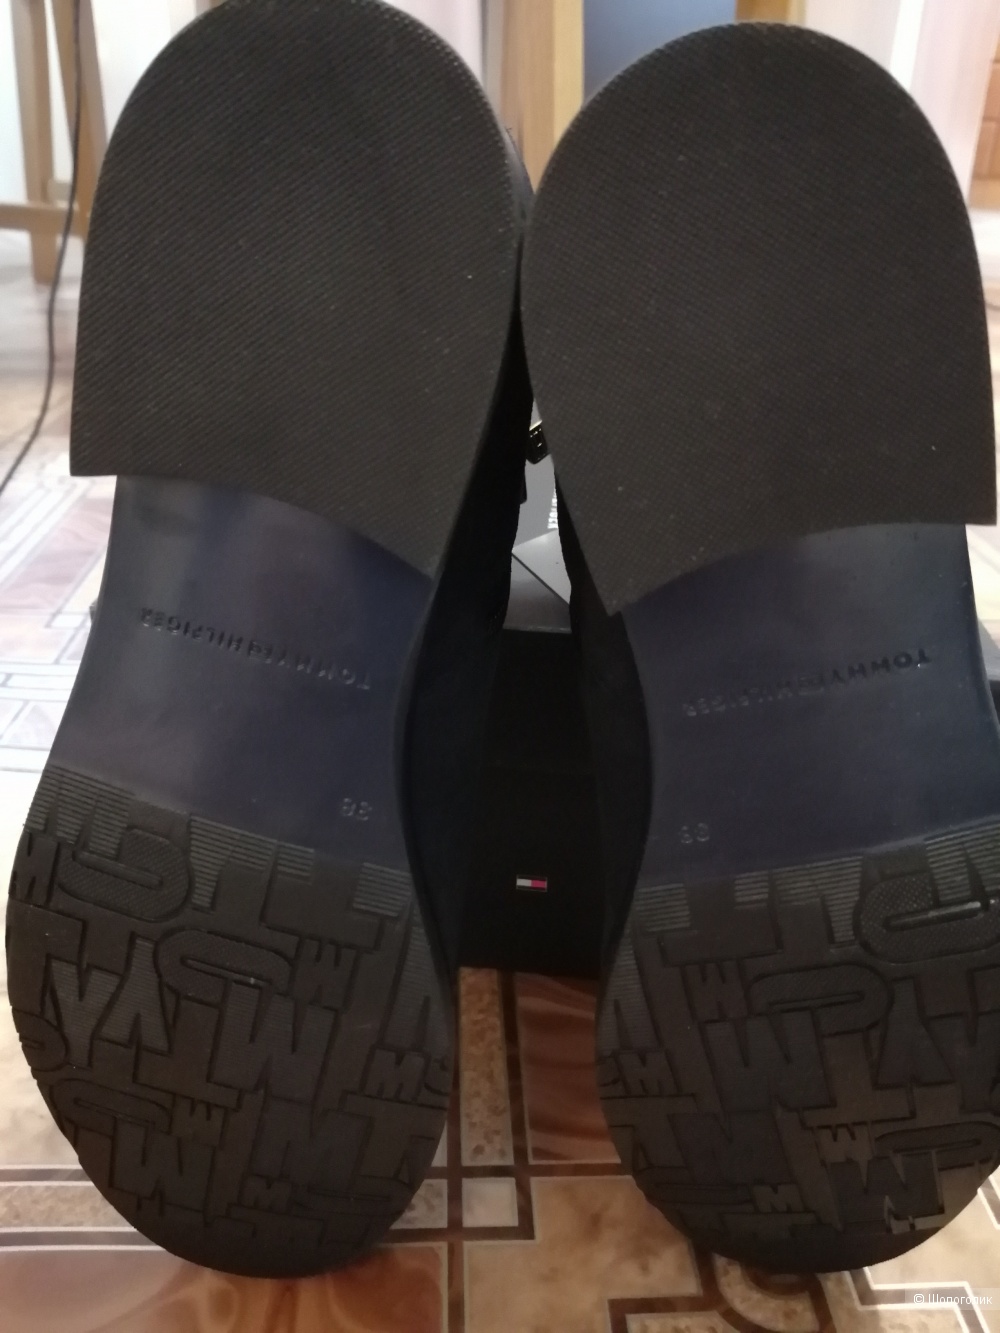 Демисезонные ботинки Tommy Hilfiger, размер рос. 37 (евр. 38).